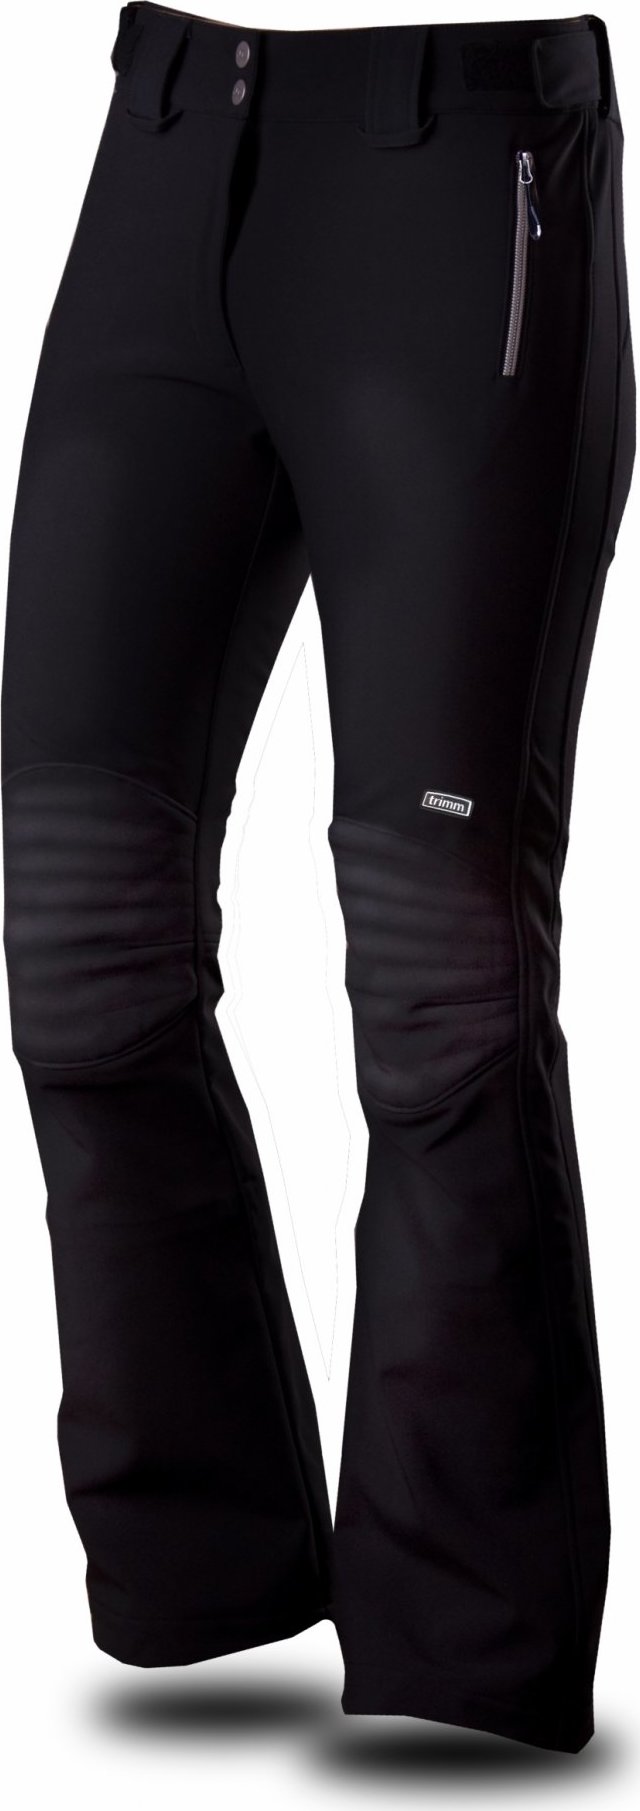 Pánské lyžařské kalhoty TRIMM Tomba černé Velikost: XL, Barva: black